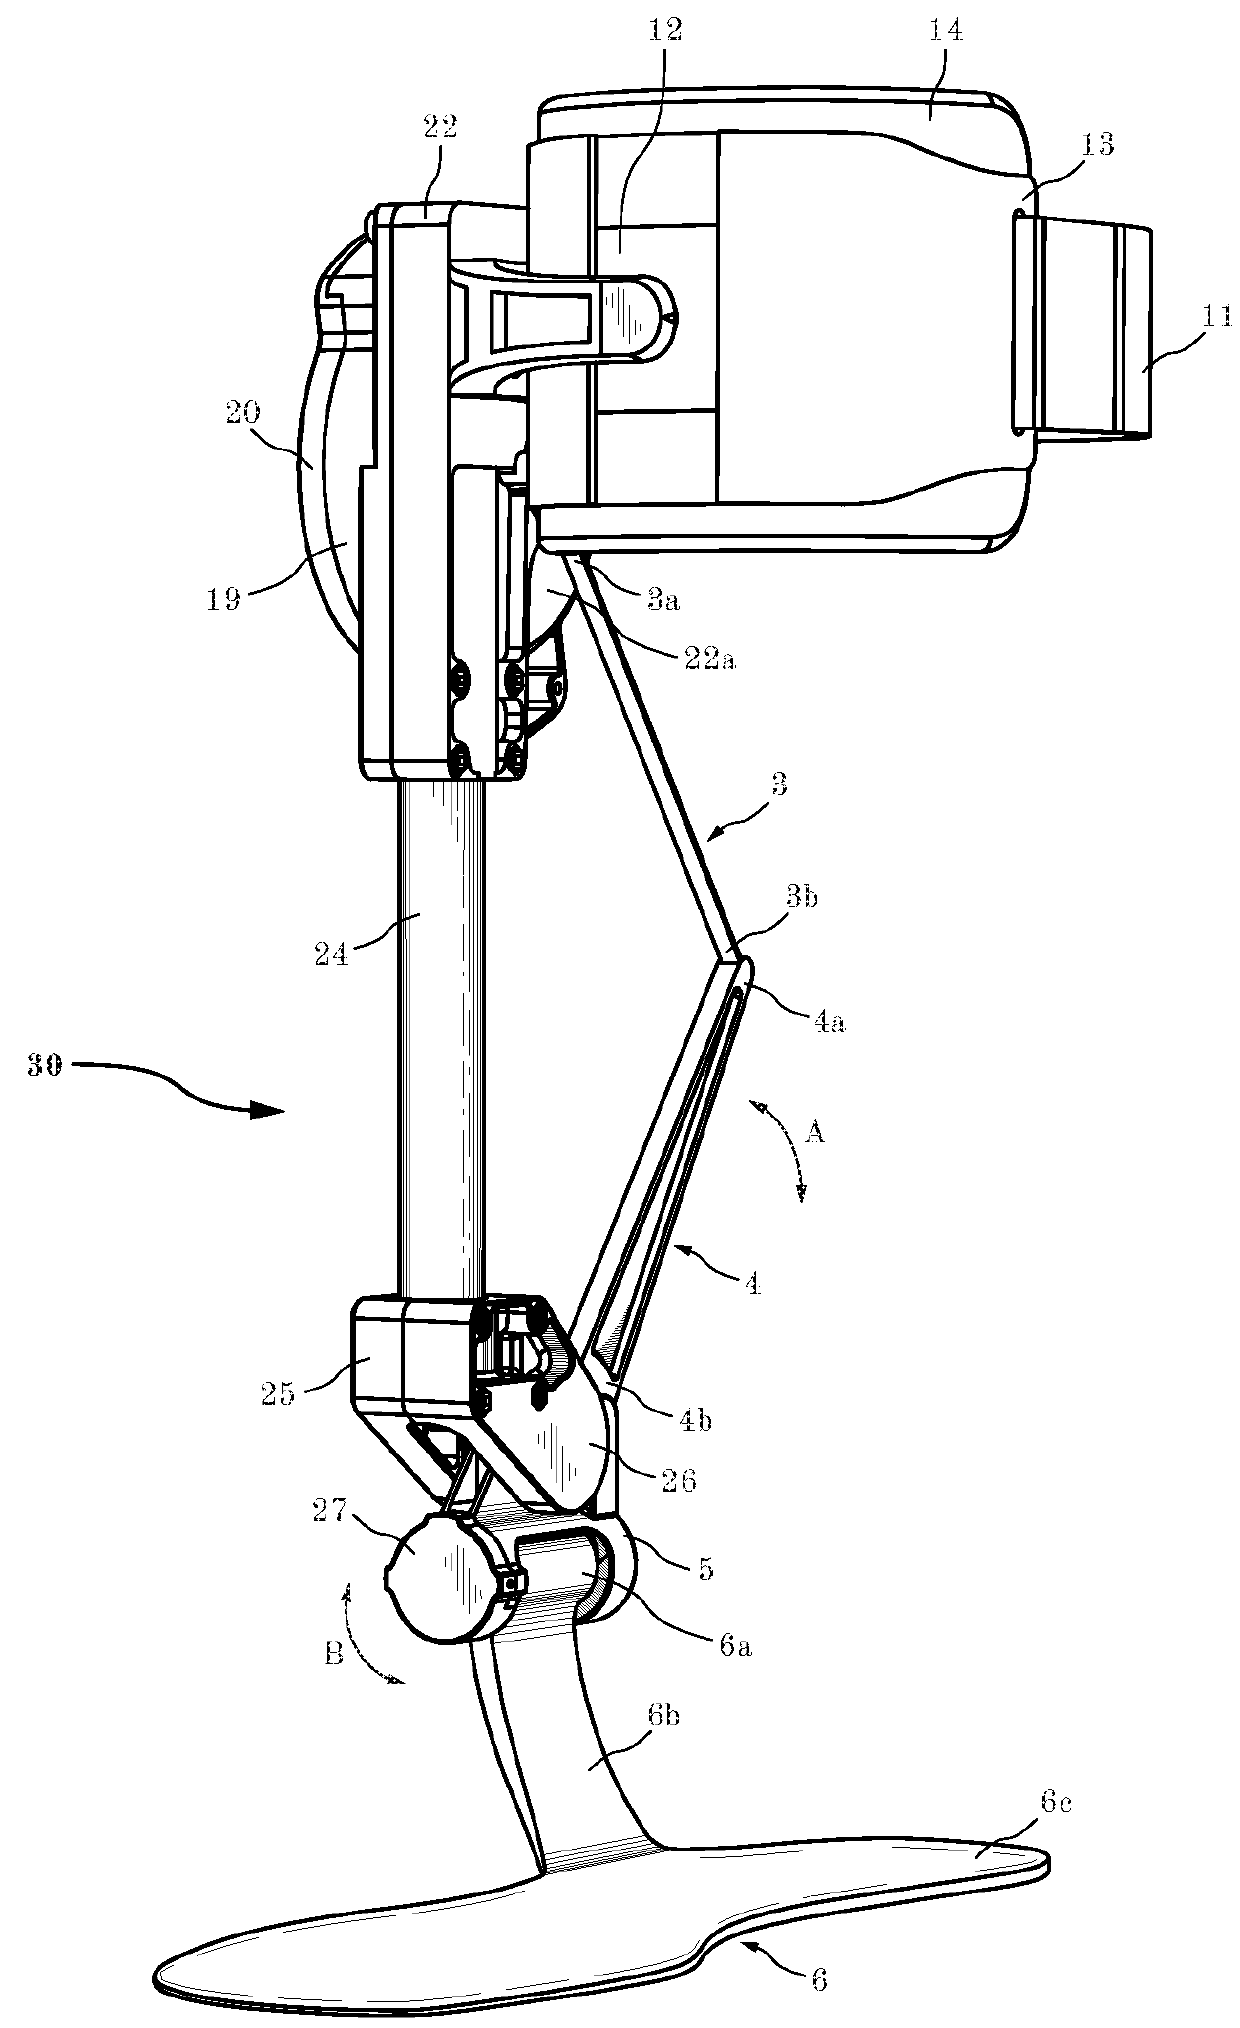 Unidirectional actuated exoskeleton device